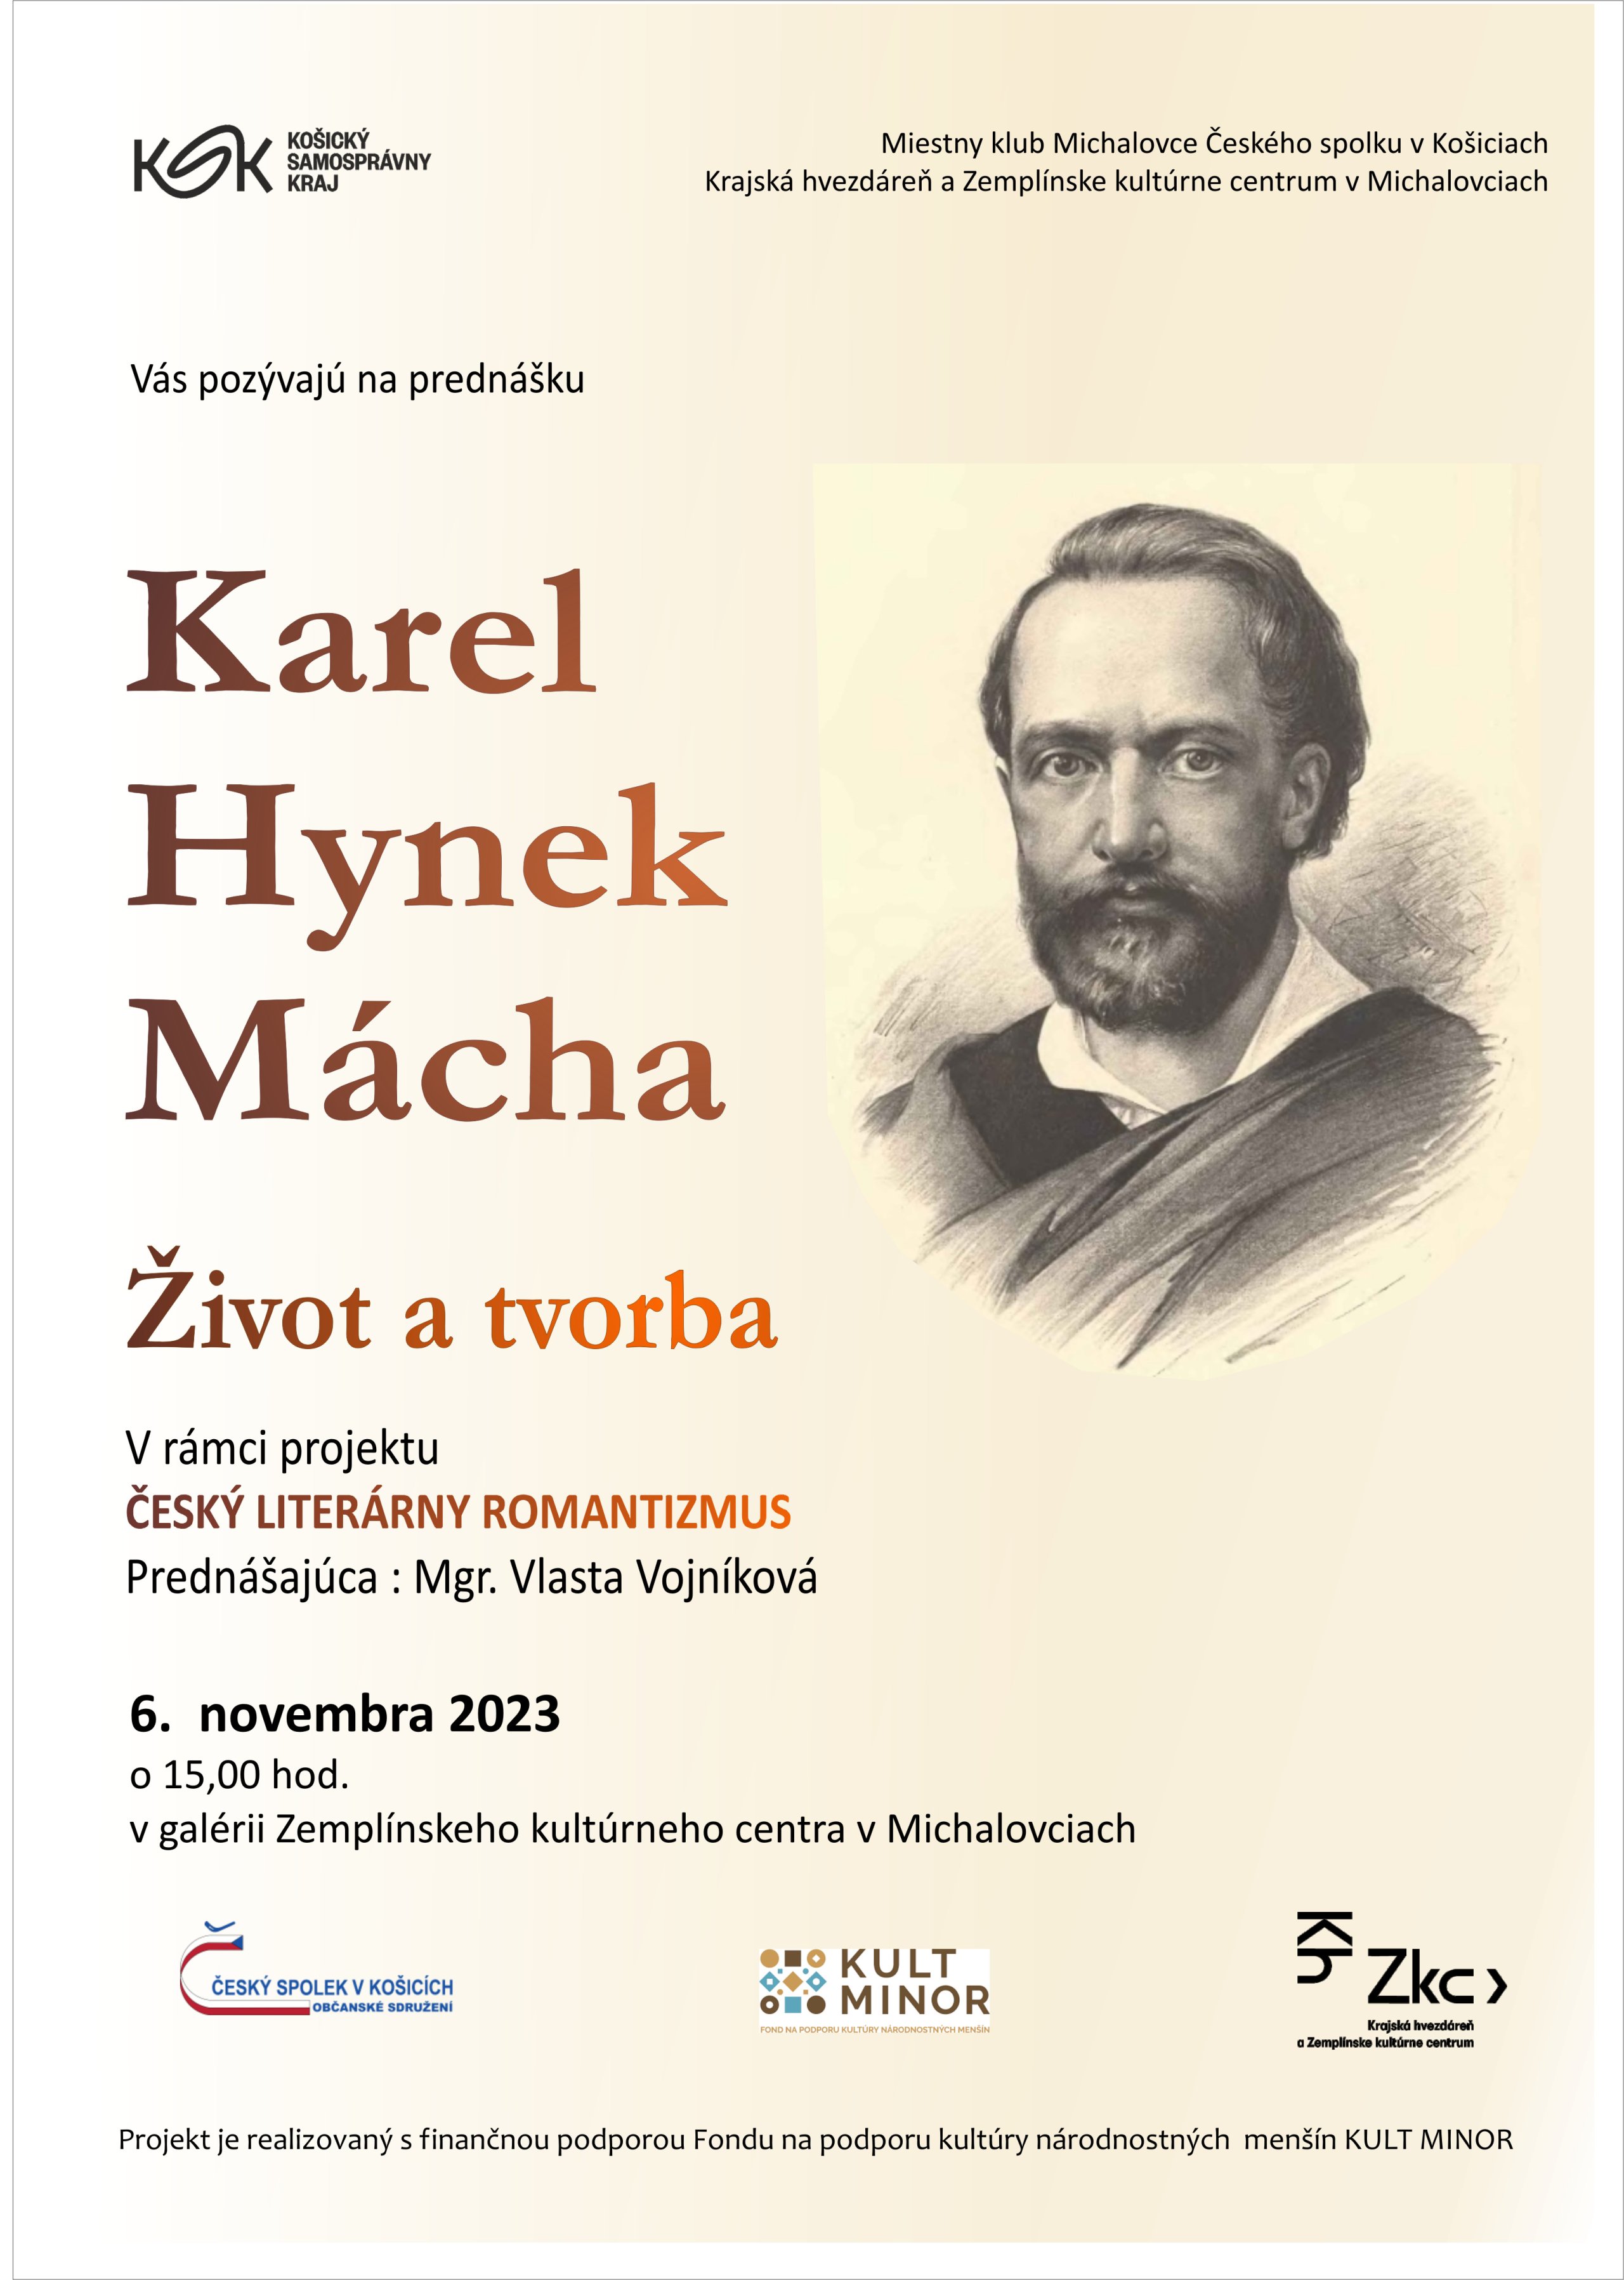 Karel Hynek Mácha - život a tvorba